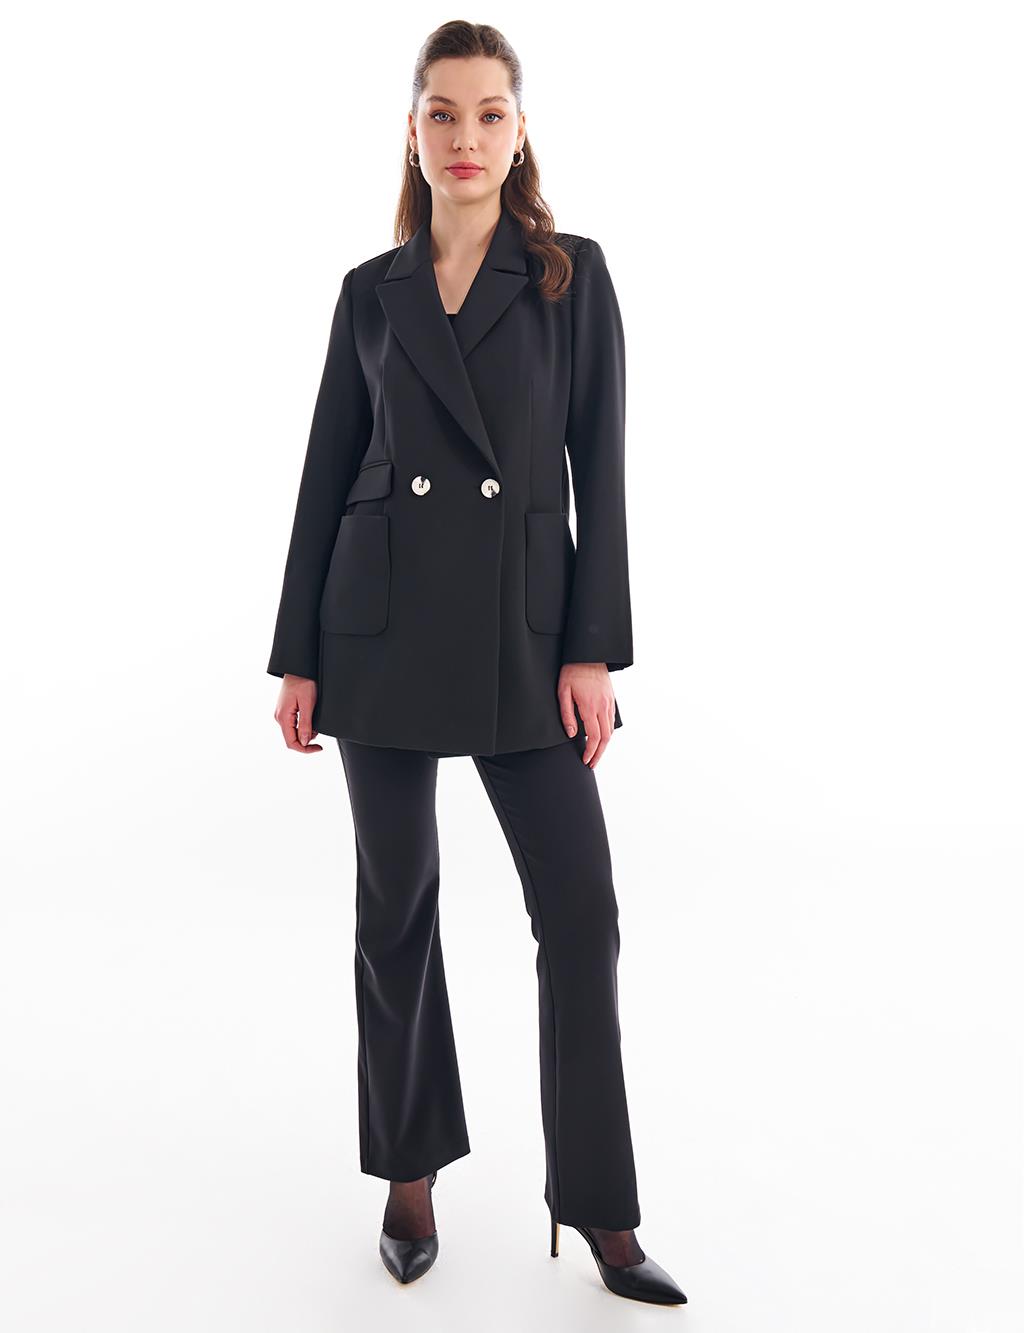 Базовый пиджак-пиджак черный KYR пиджак orsay базовый 46 размер